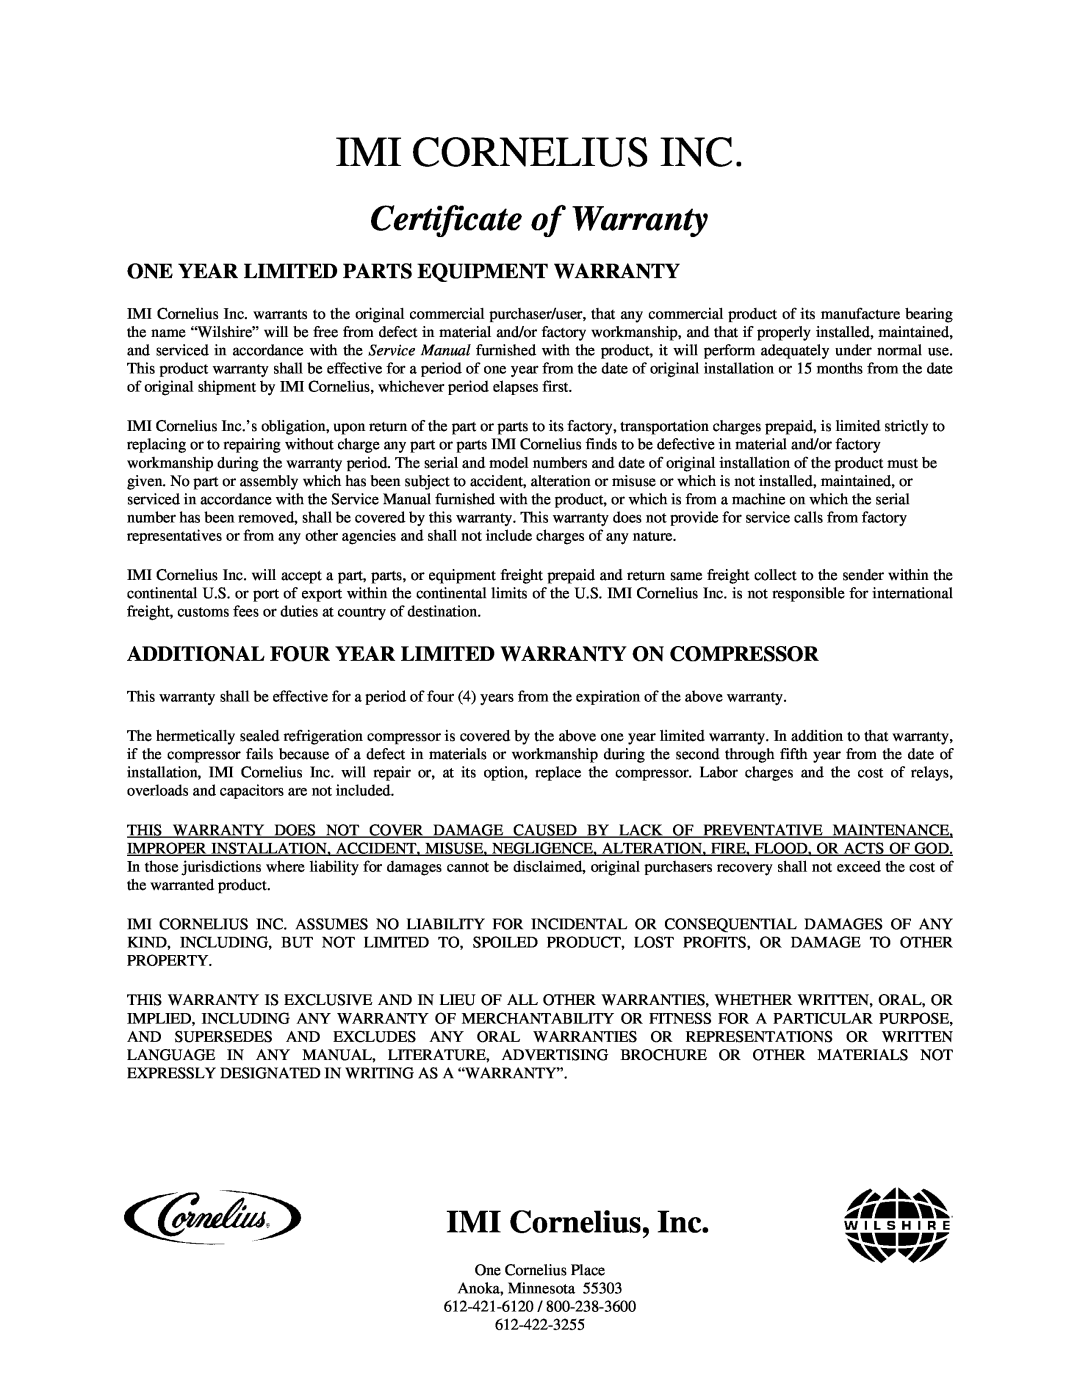 Cornelius MJ31-4 PC, MJ32-4 PB, MJ32-4 PC, MJ30-4 PB Imi Cornelius Inc, Certificate of Warranty, IMI Cornelius, Inc 